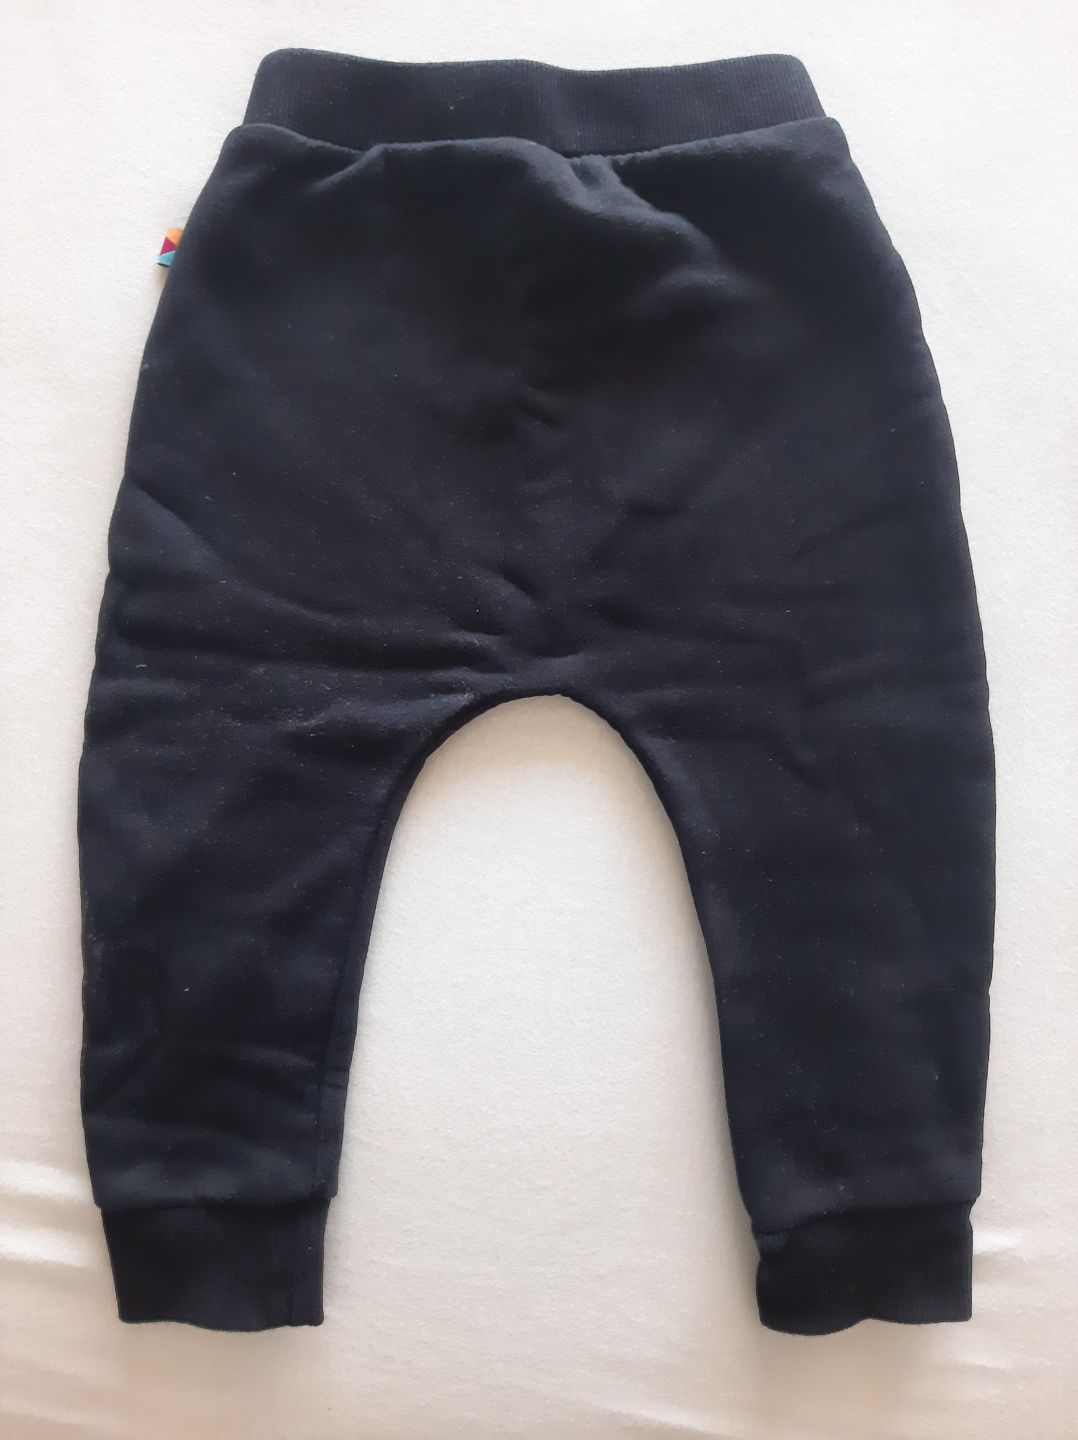 Spodnie dresowe z meszkiem MyBasic, Rozmiar 86, czarne